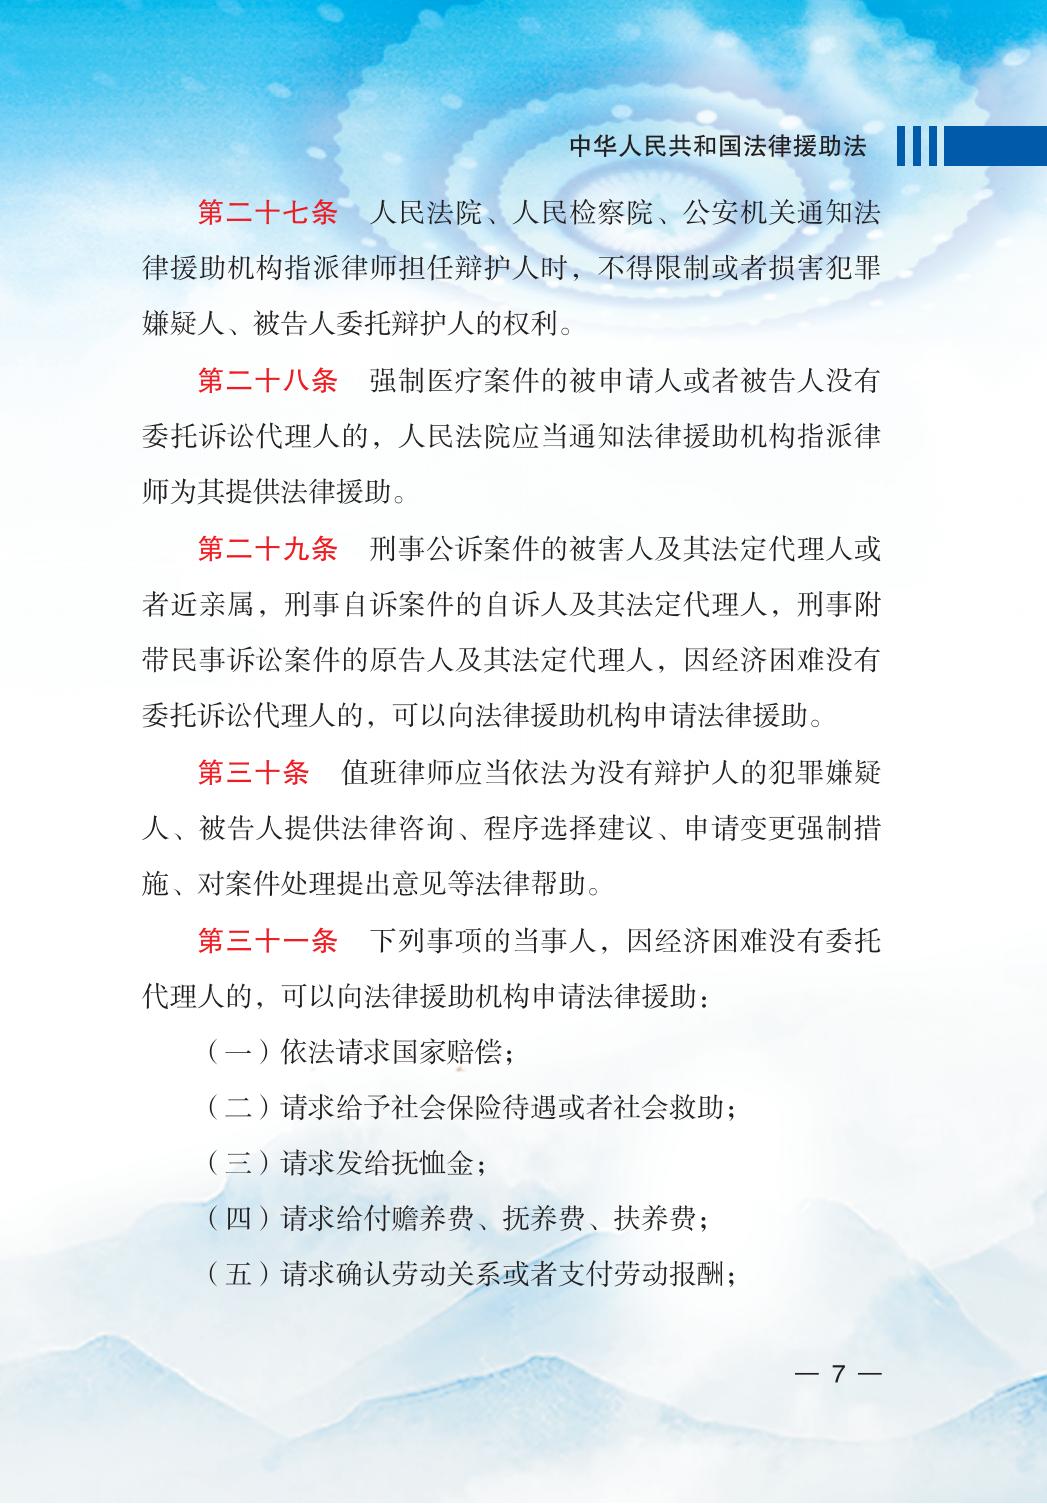 中华人民共和国法律援助法_09.jpg